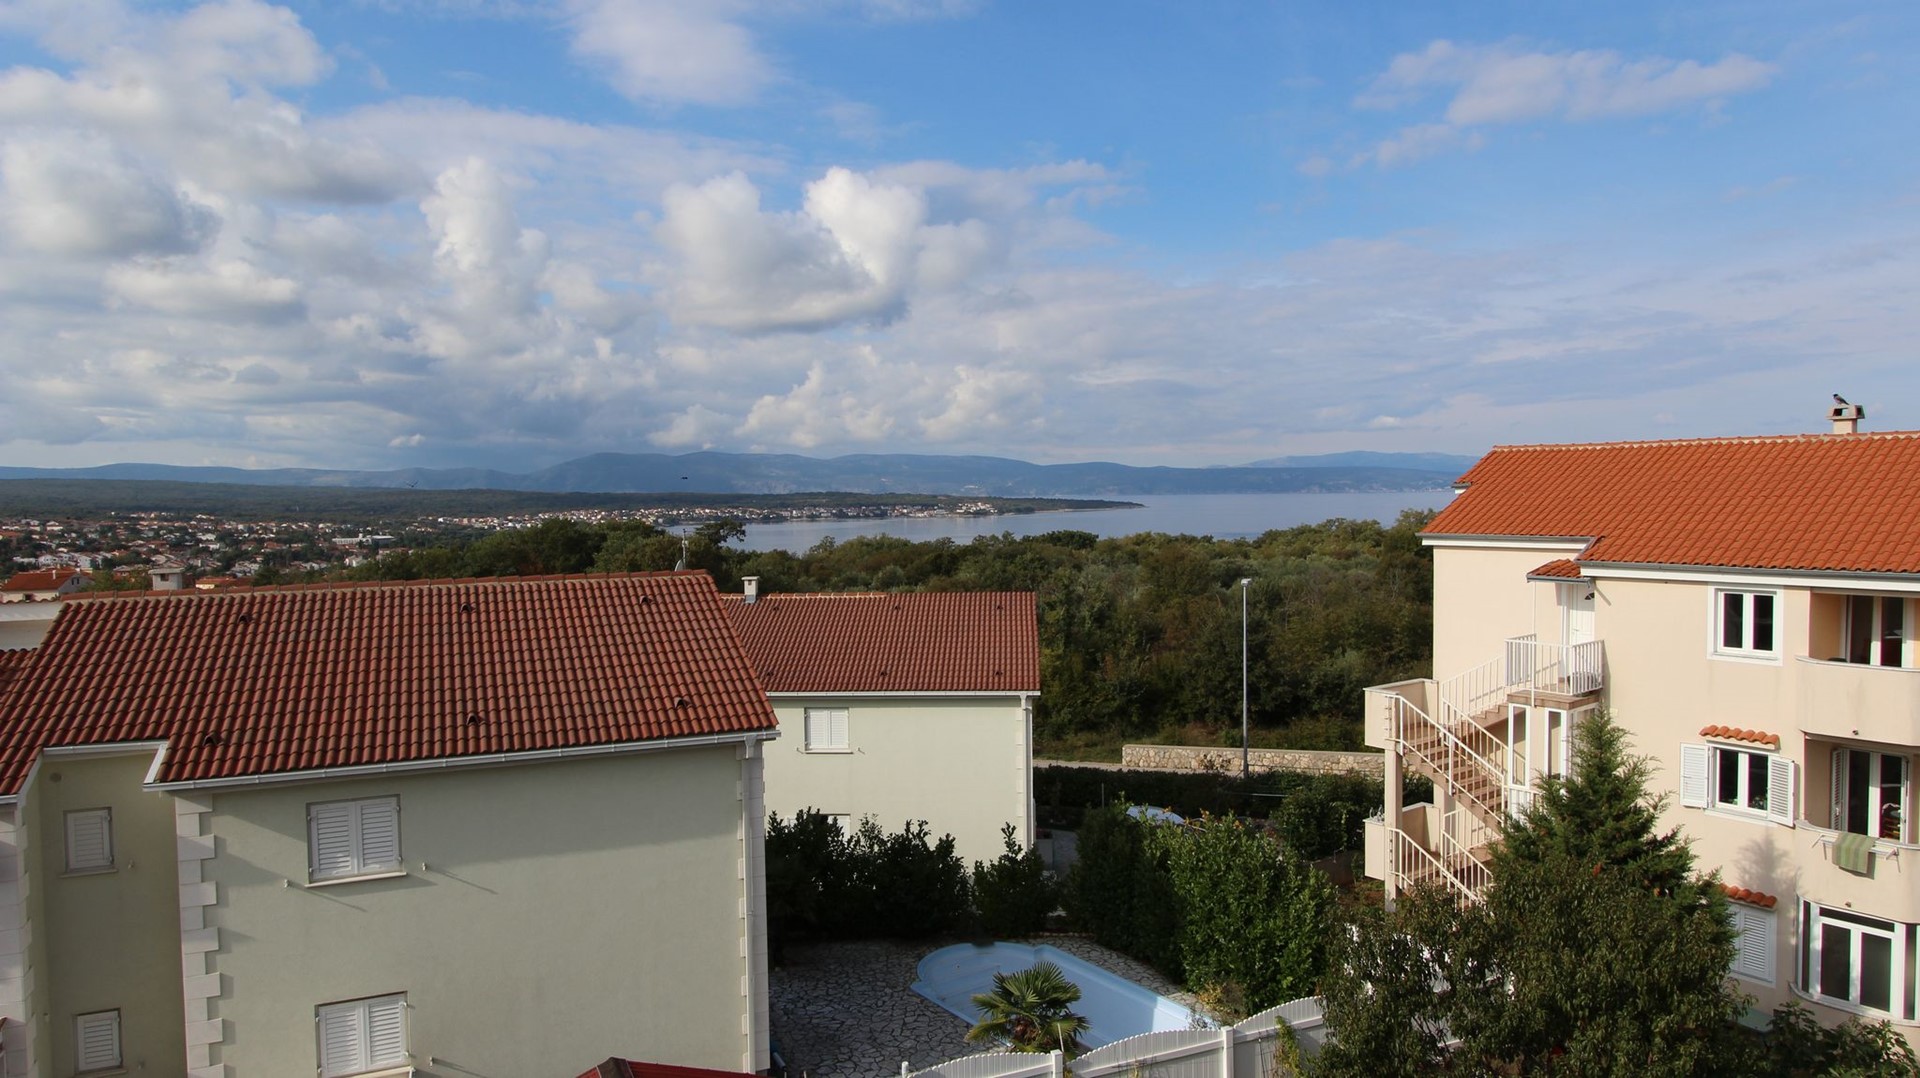 Deluxe Ferienwohnung mit wunderschönem Meerbl   kroatische Inseln